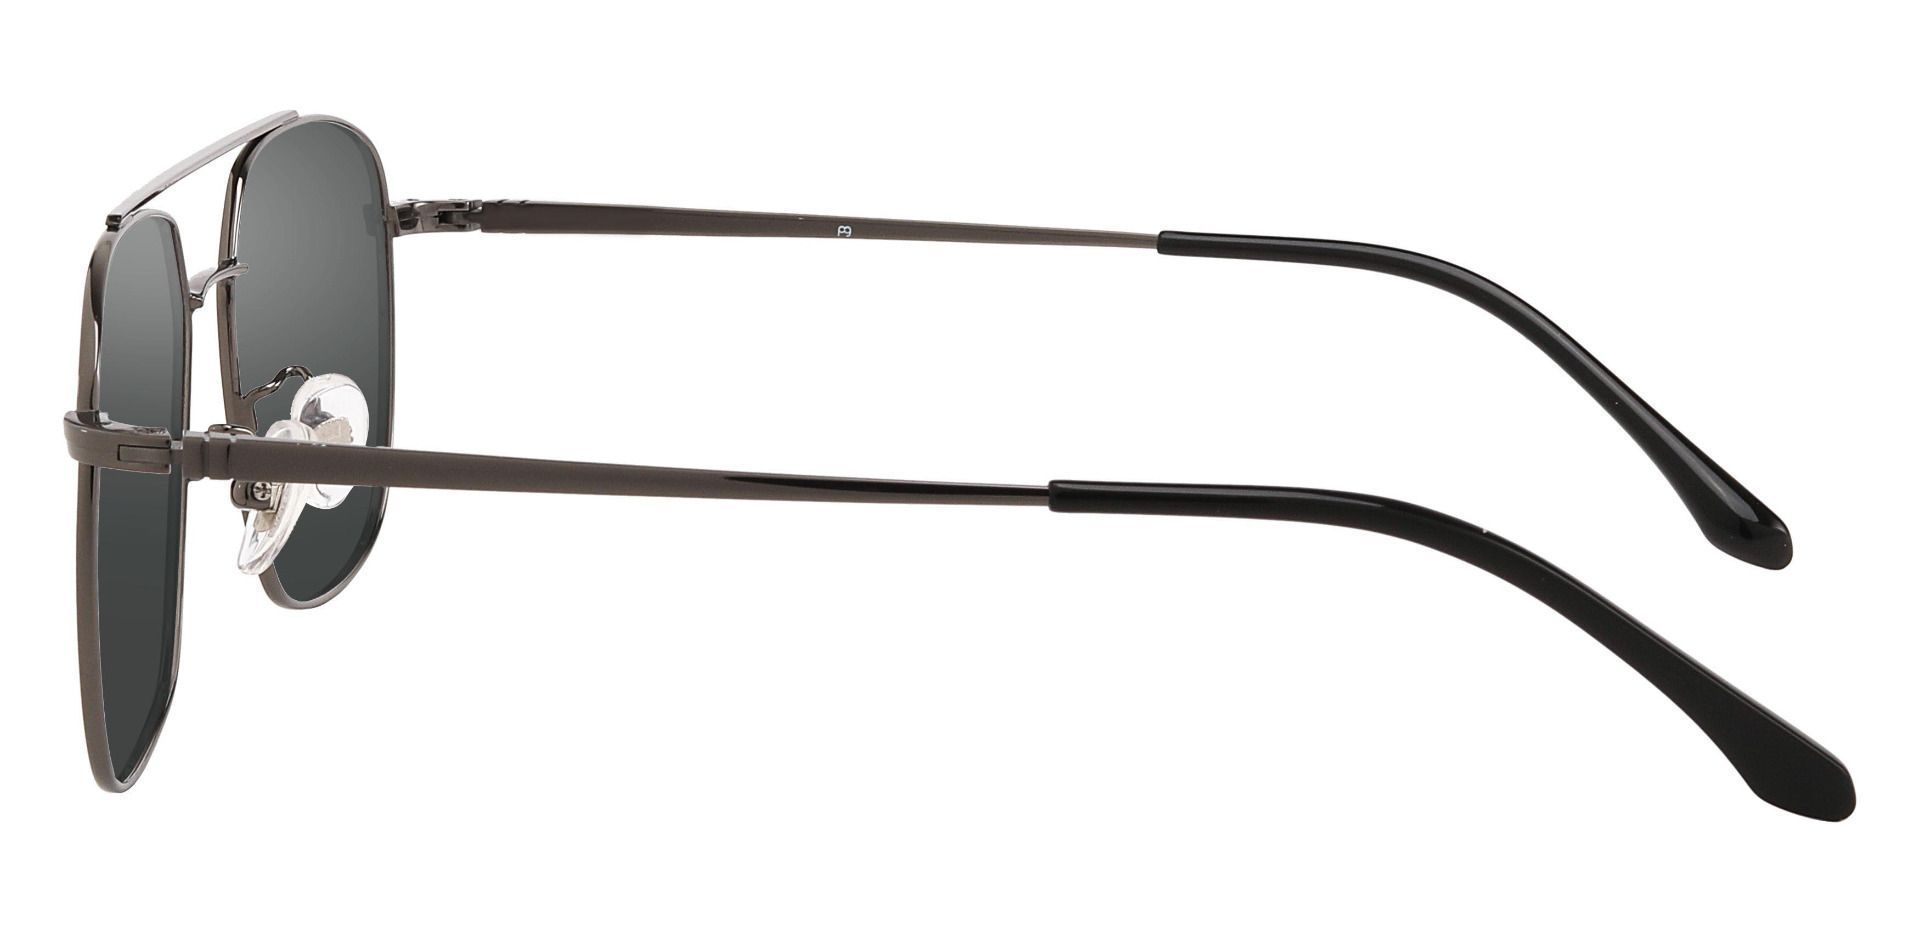 Trevor Aviator Lined Bifocal Sunglasses - Gray Frame With Gray Lenses